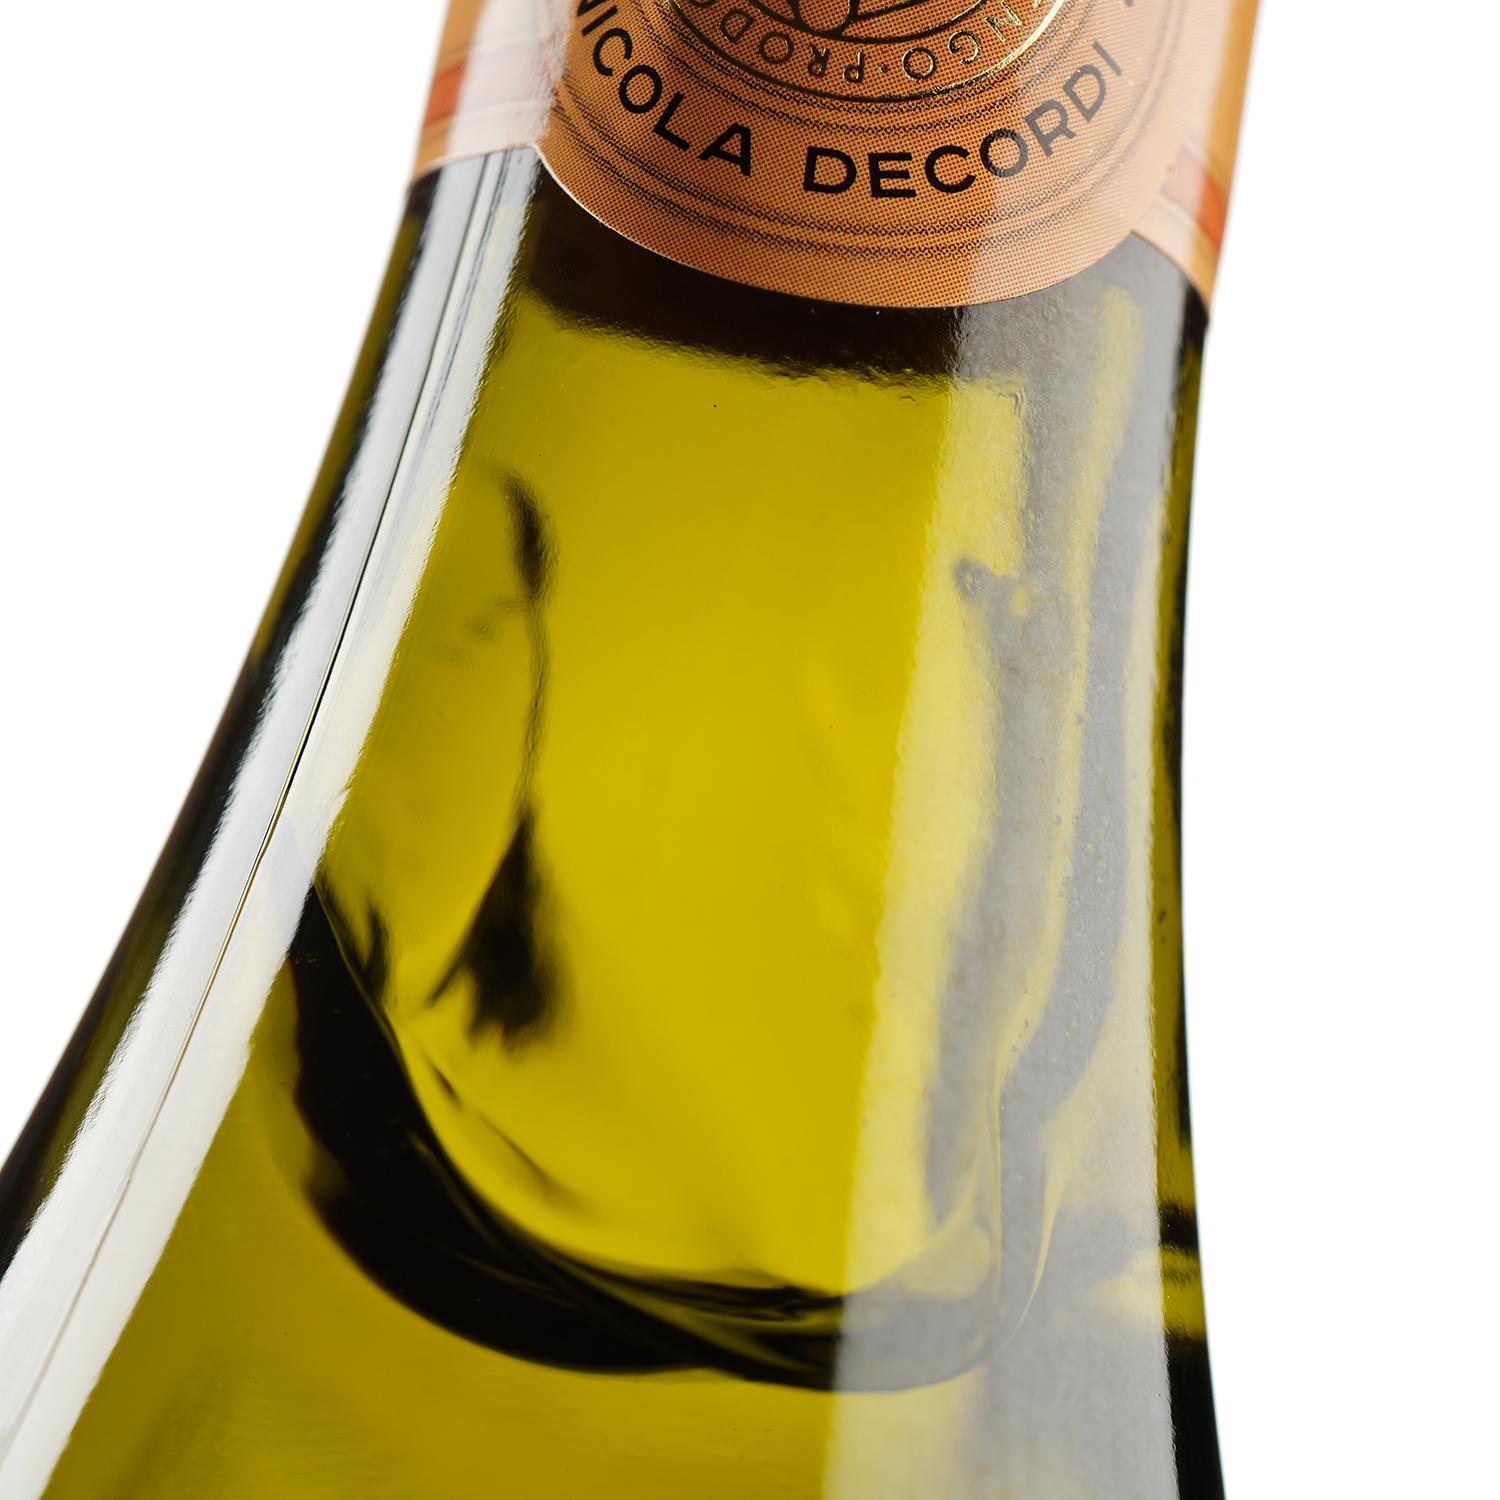 Напиток винный Marengo Pesca, белое, полусладкое, 7,5%, 0,75л - фото 4